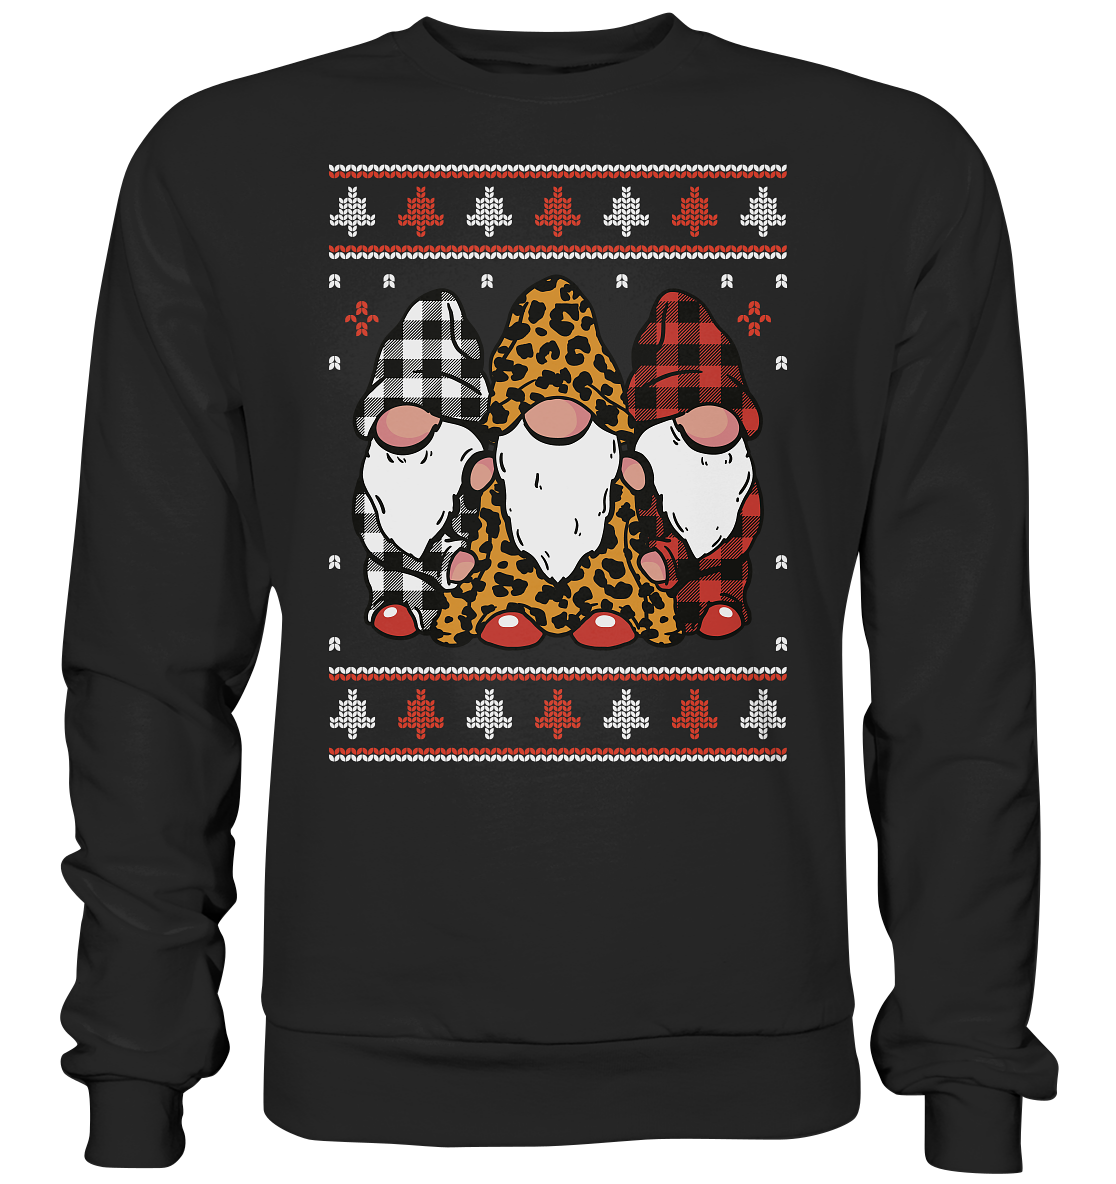 Weihnachtsmann, Santa Claus, Christmas , Gnome - Premium Sweatshirt